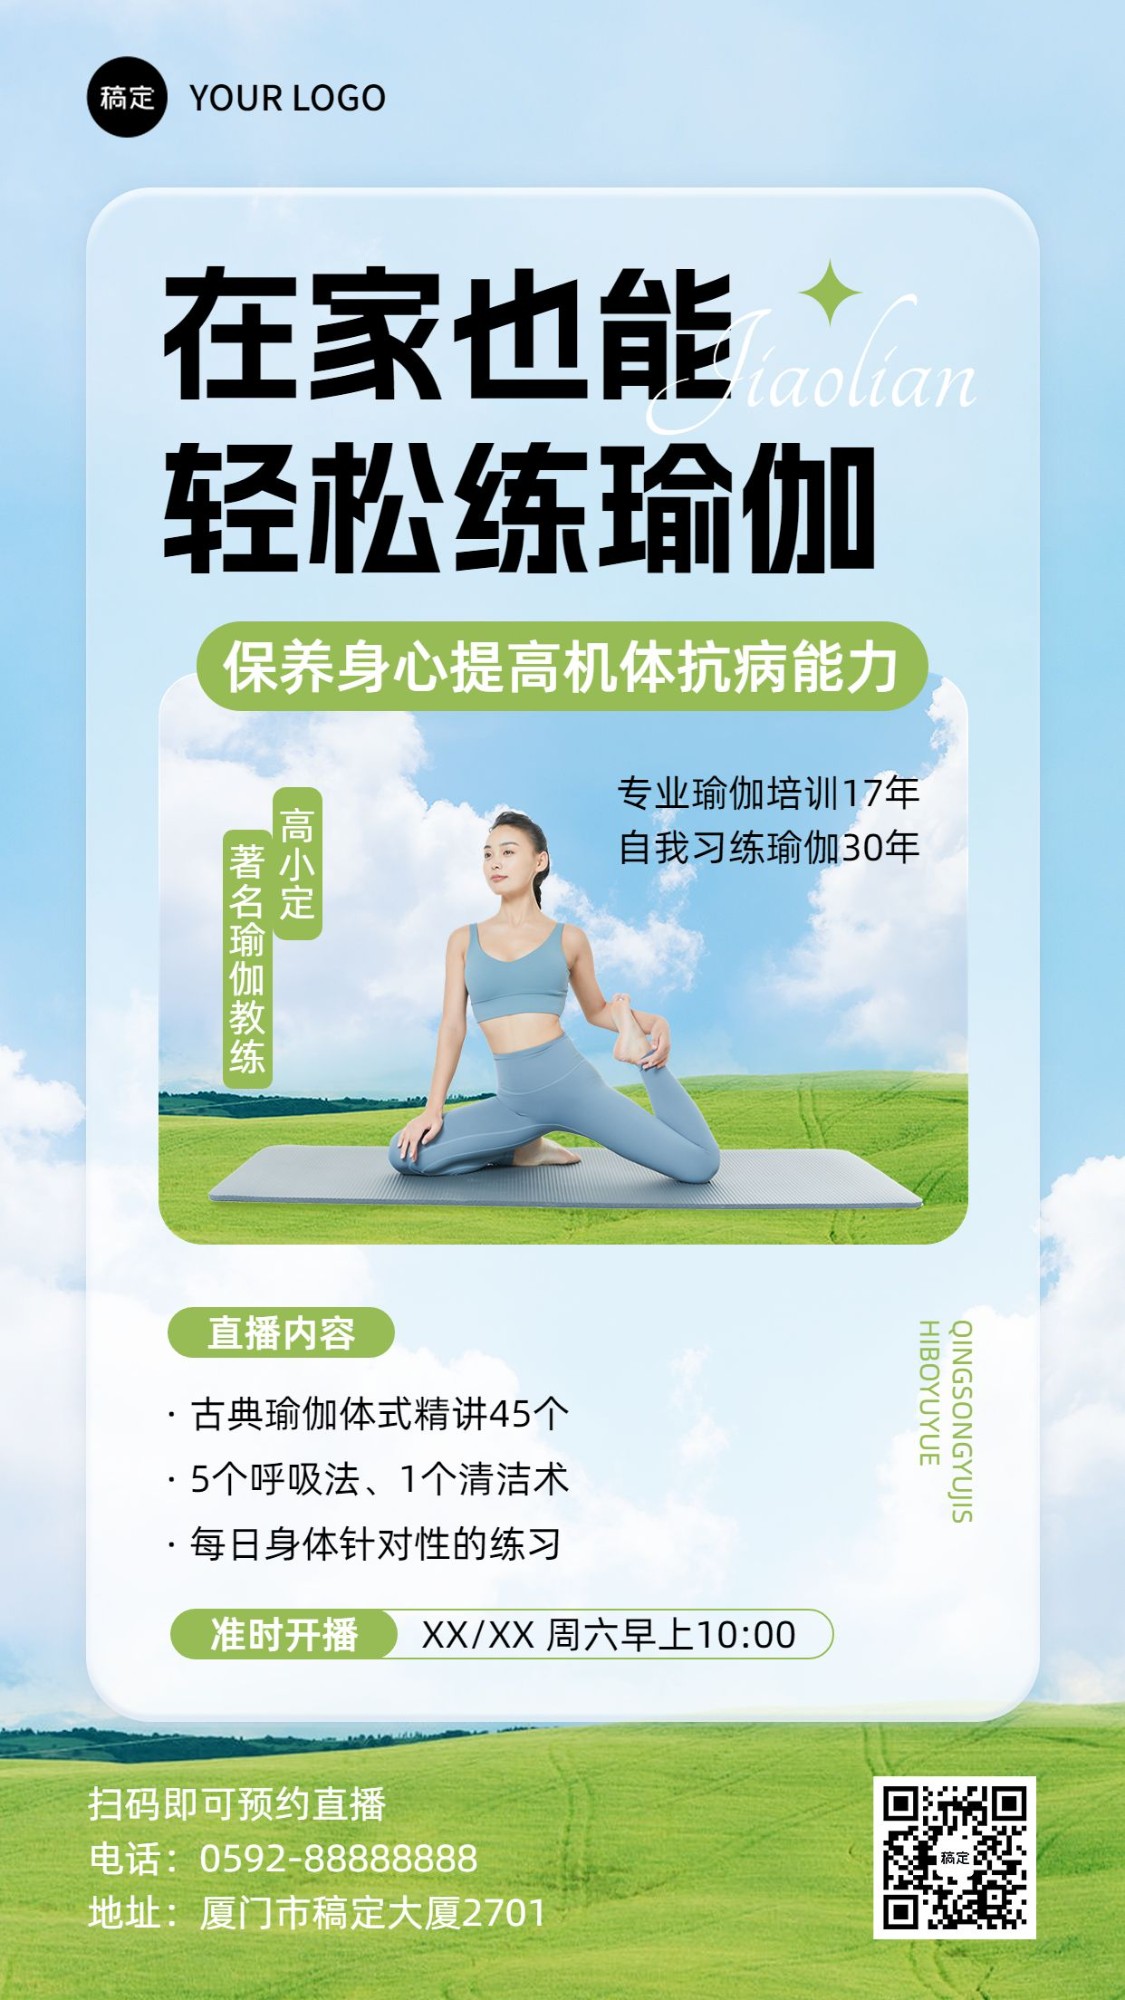 知识付费生活健康瑜伽课程直播预告自然元素风手机海报